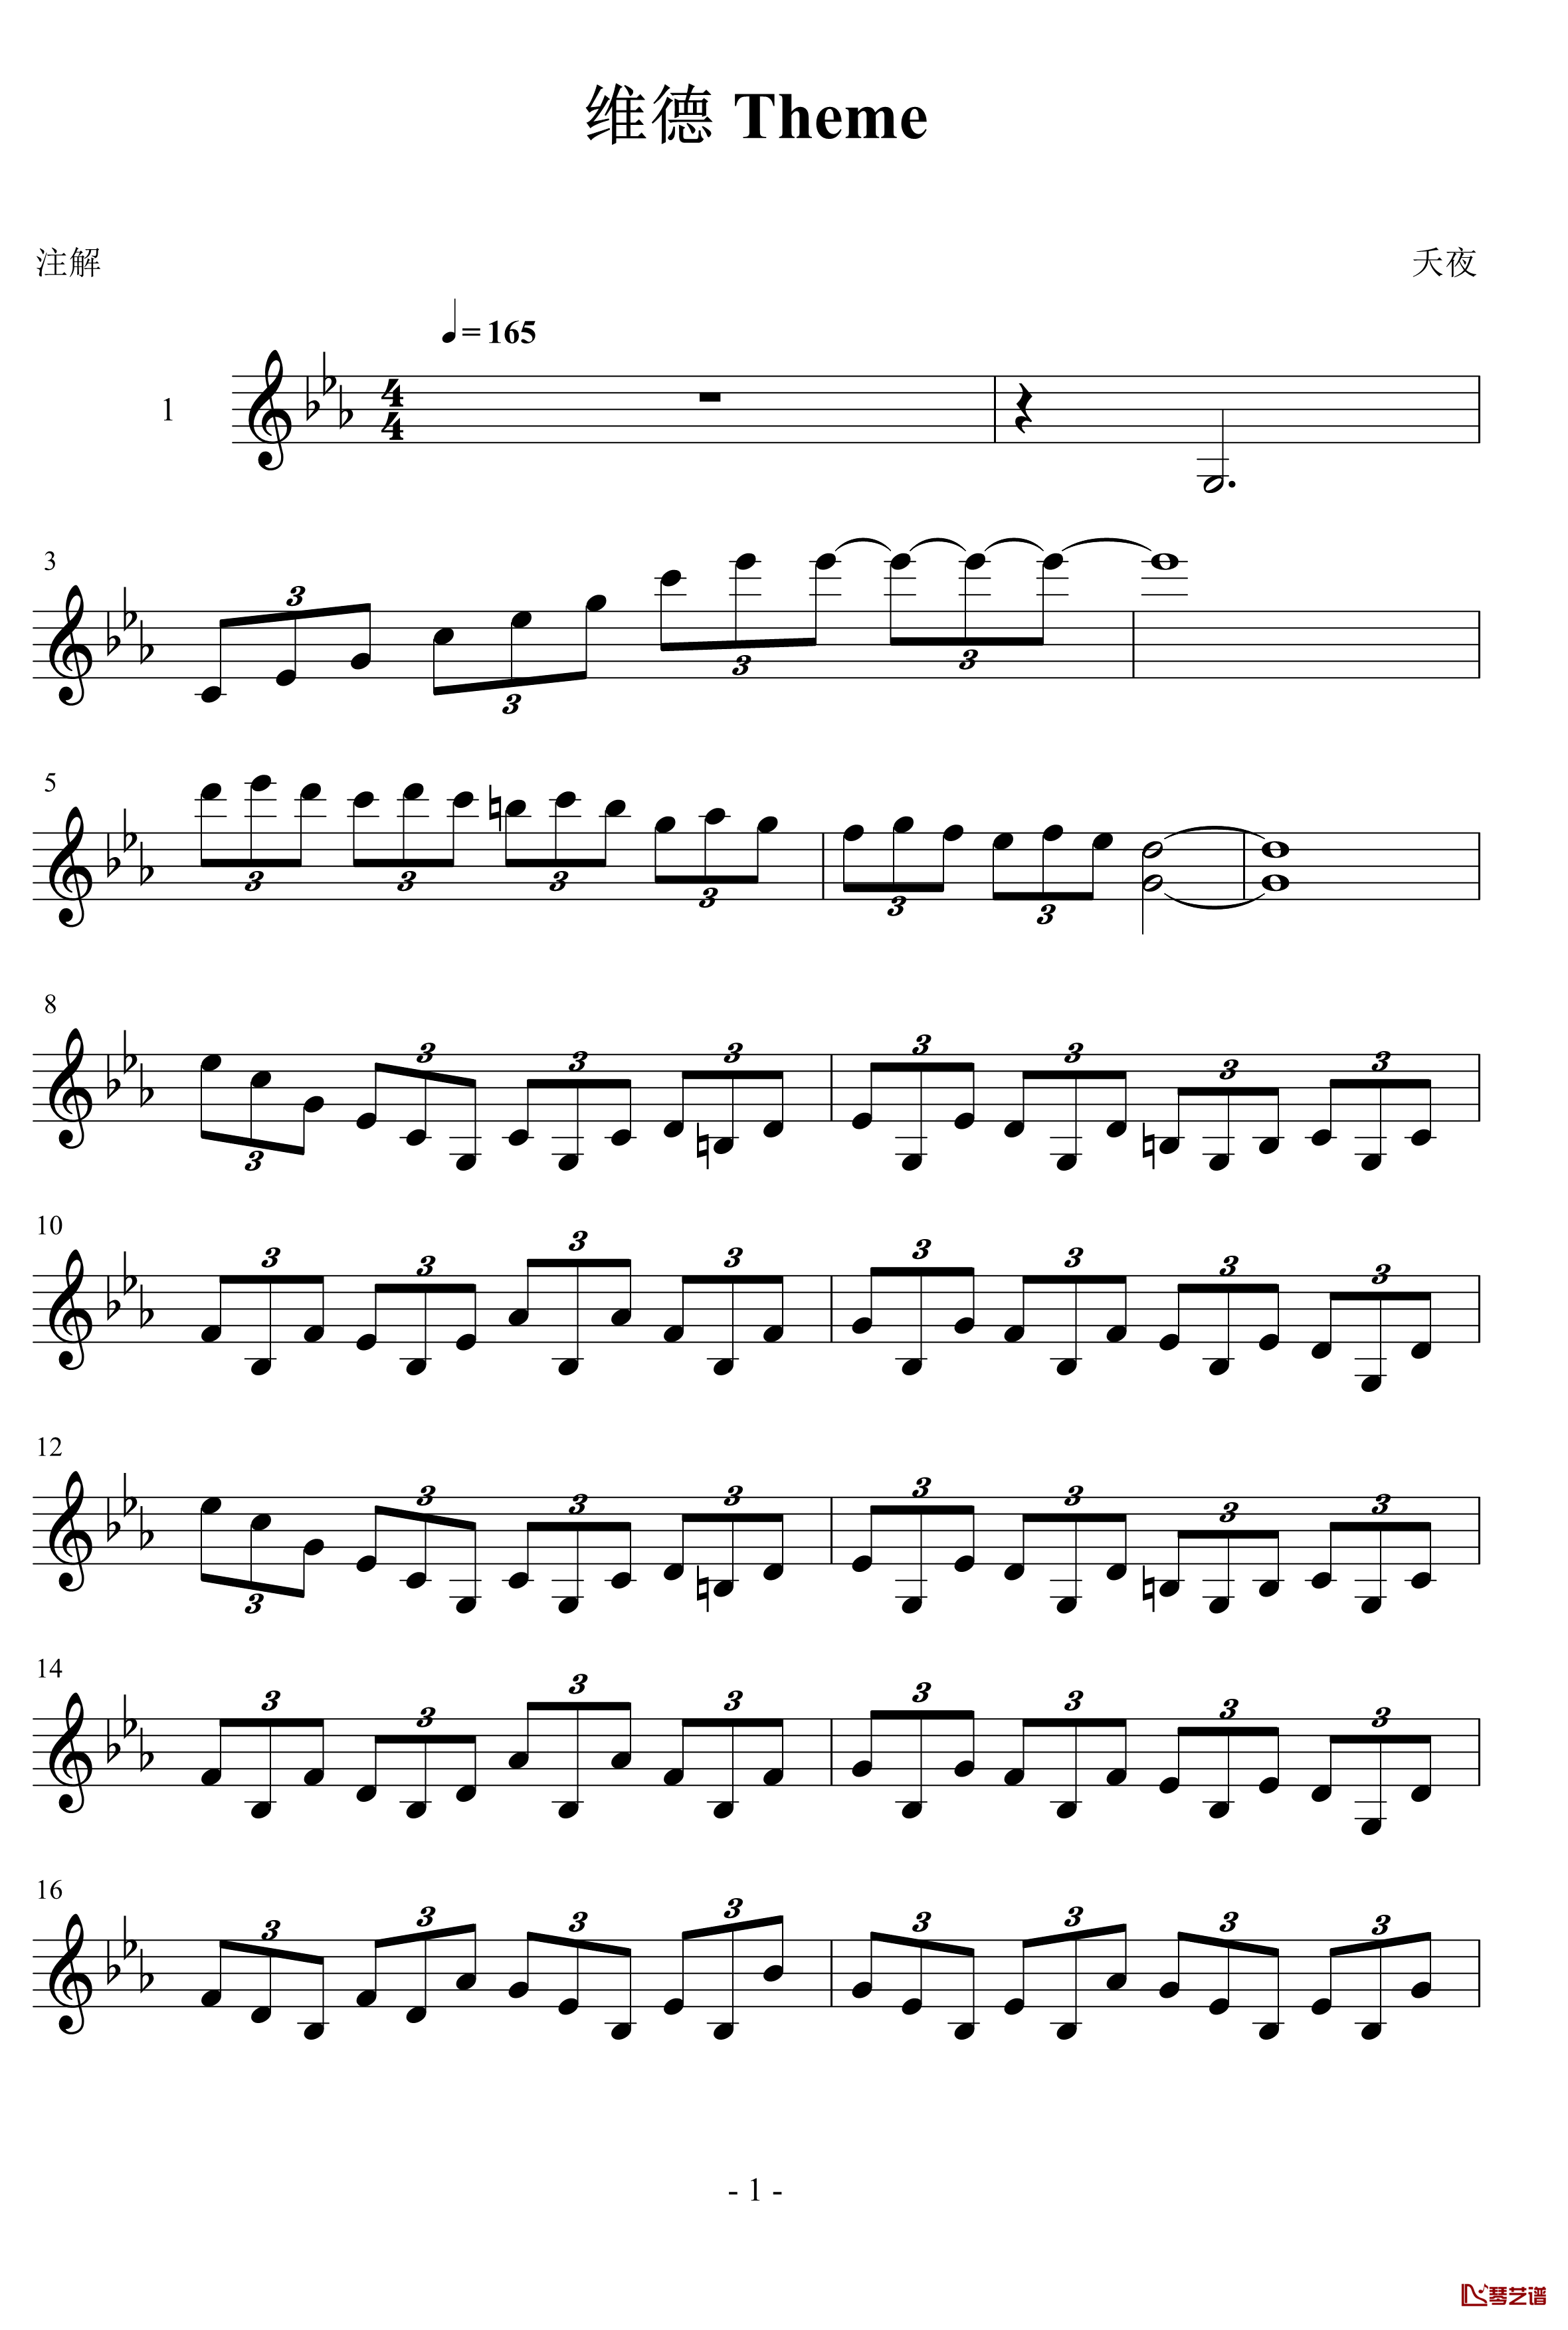 维德theme钢琴谱-王利夫1